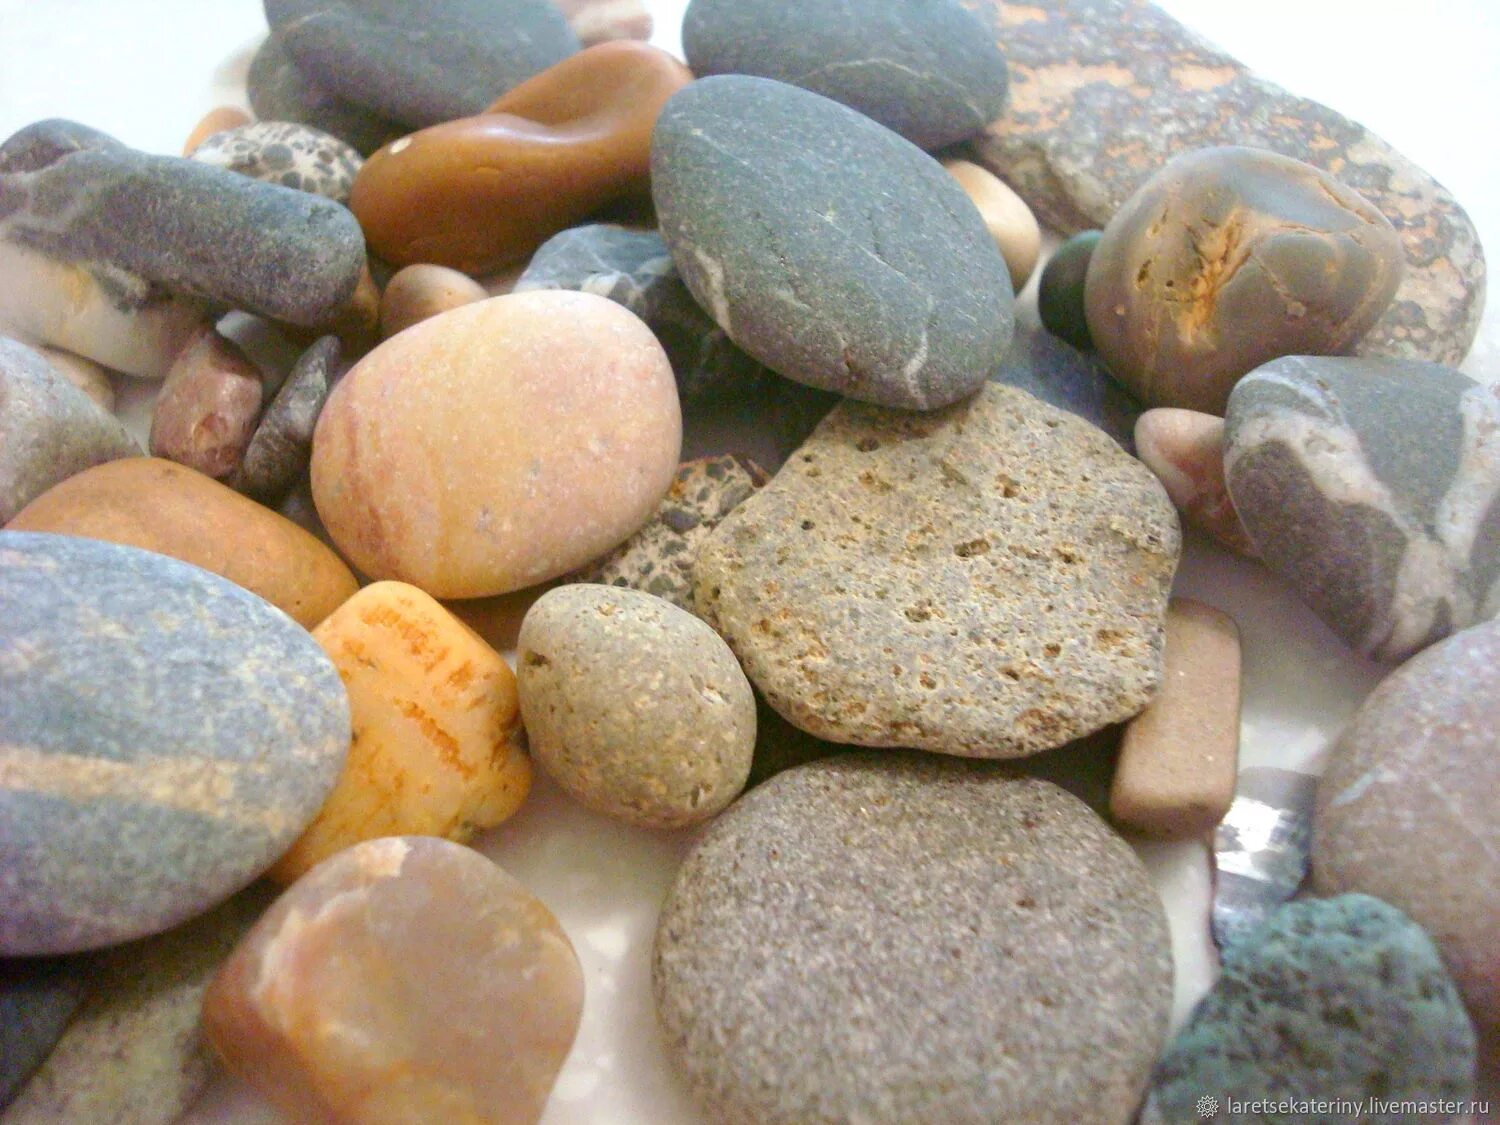 Купить камни геншин. Красивые камушки. Морские камни. Камень галька. Коллекция камней.